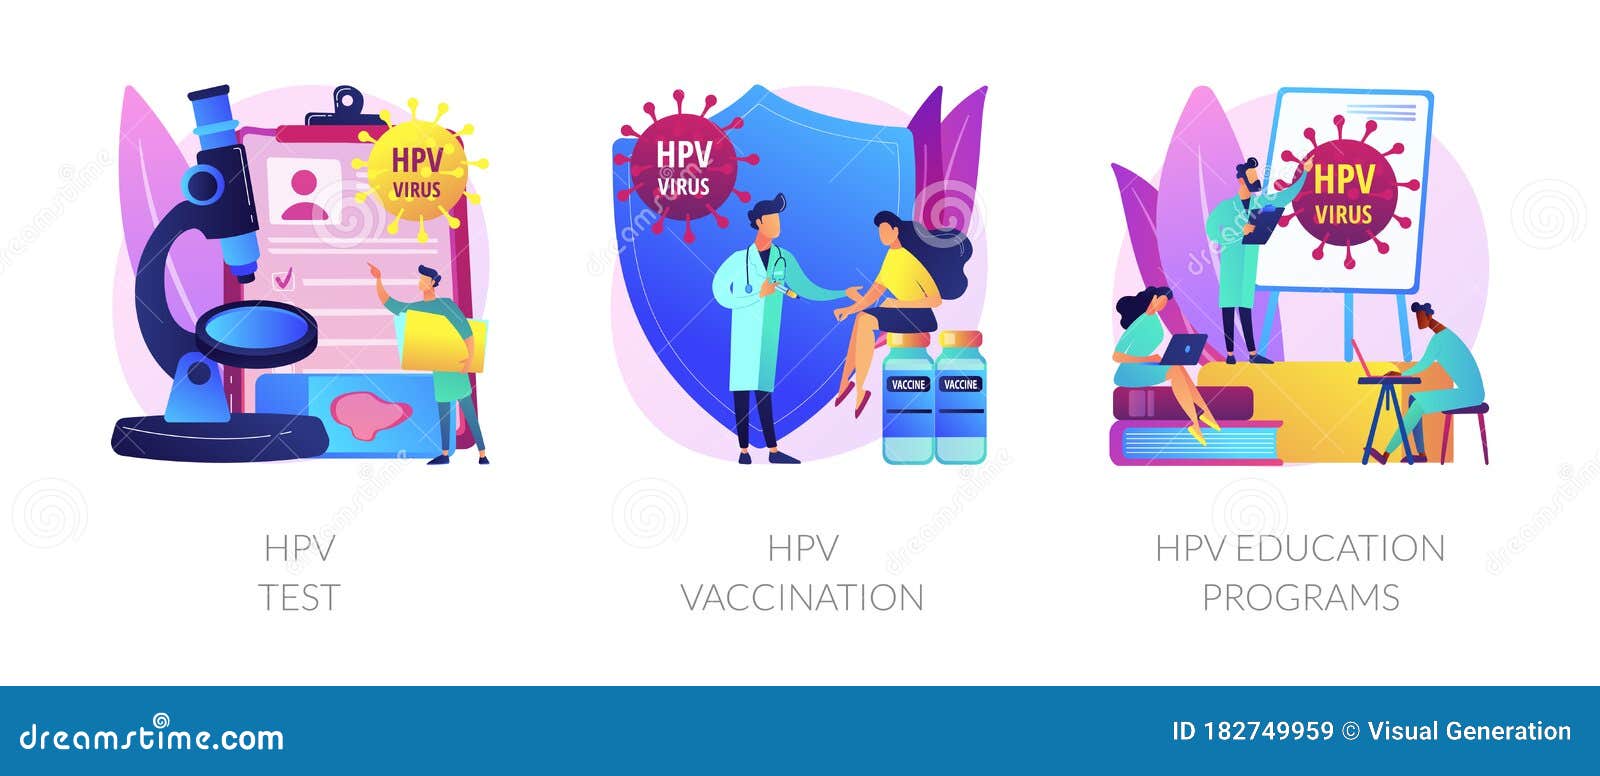 hpv virus prevention)